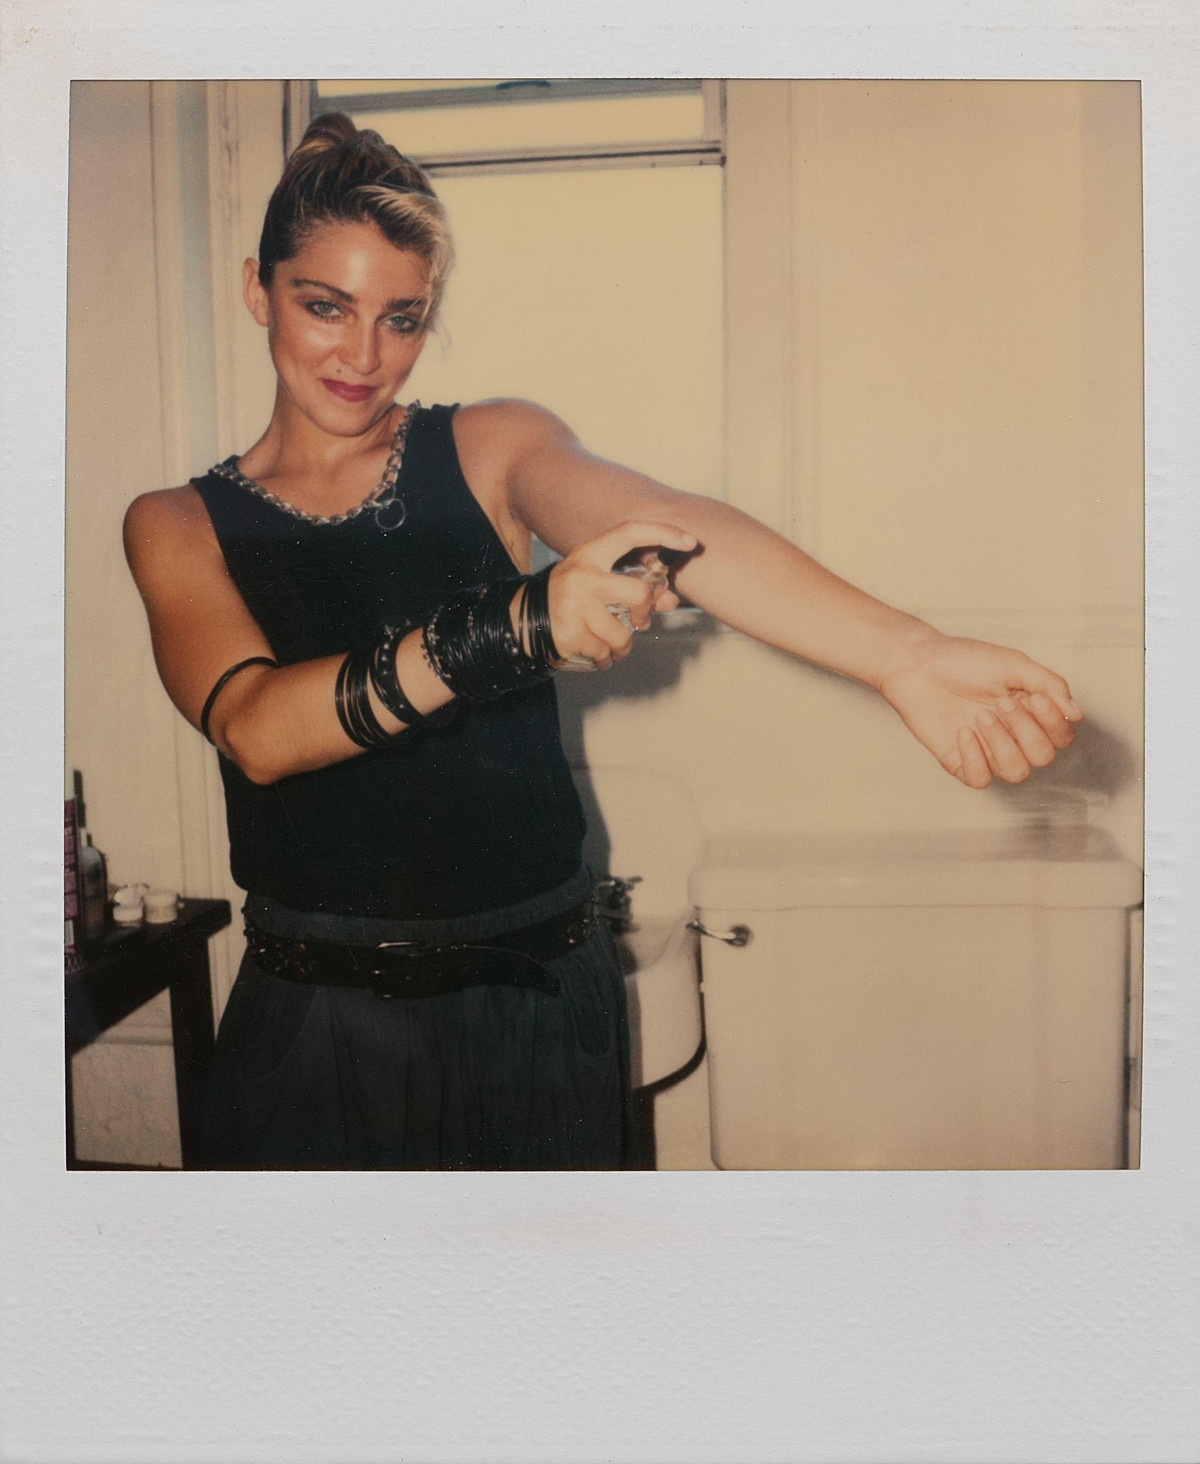 Мадонна на пороге славы в полароидных фотографиях 1983 года Ричарда Кормана 13 1